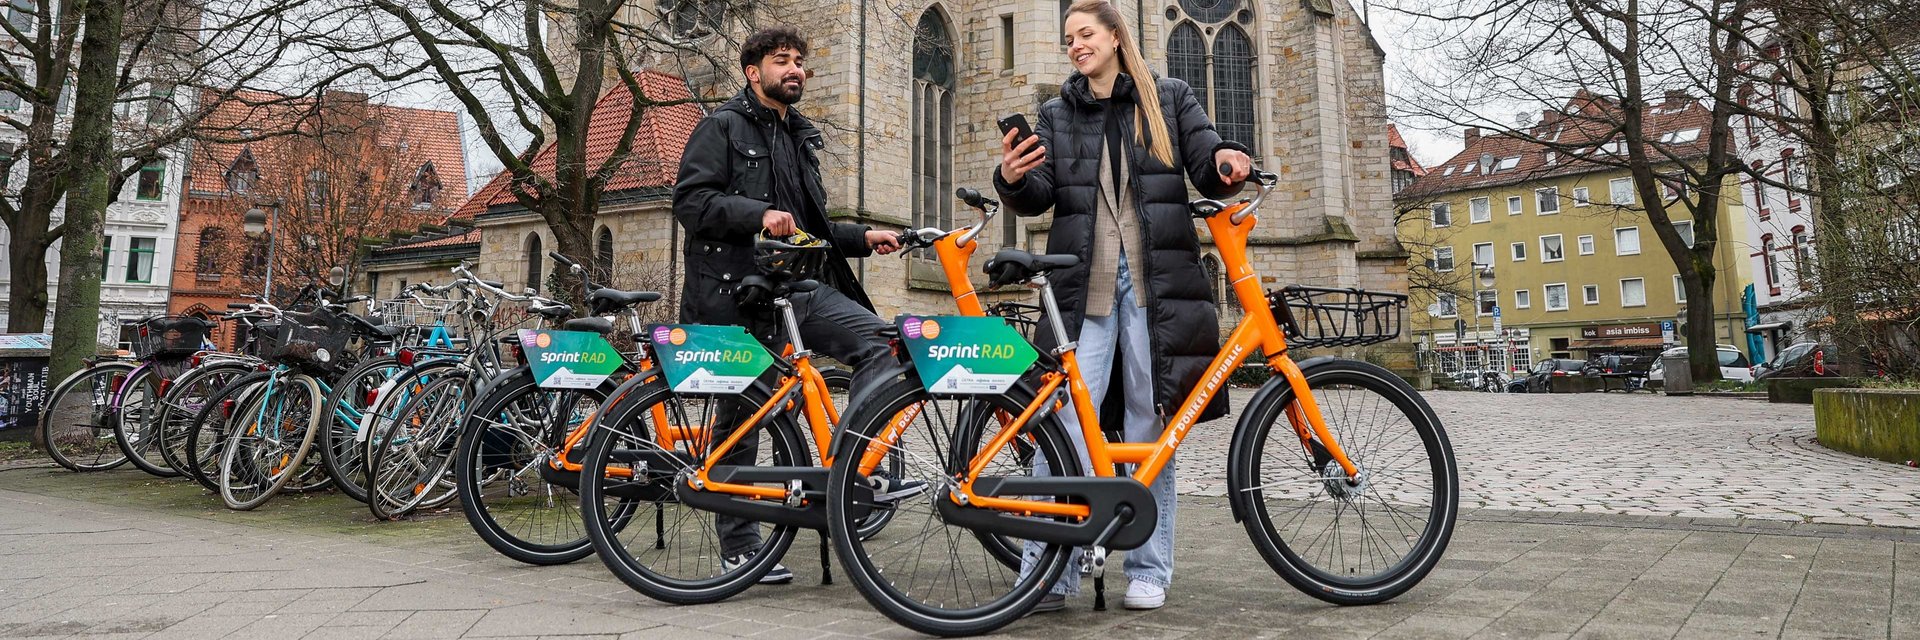 Ein Mann und eine Frau stehen an zwei Fahrrädern. Im Hintergrund befindet sich die Lutherkirche in Hannover.